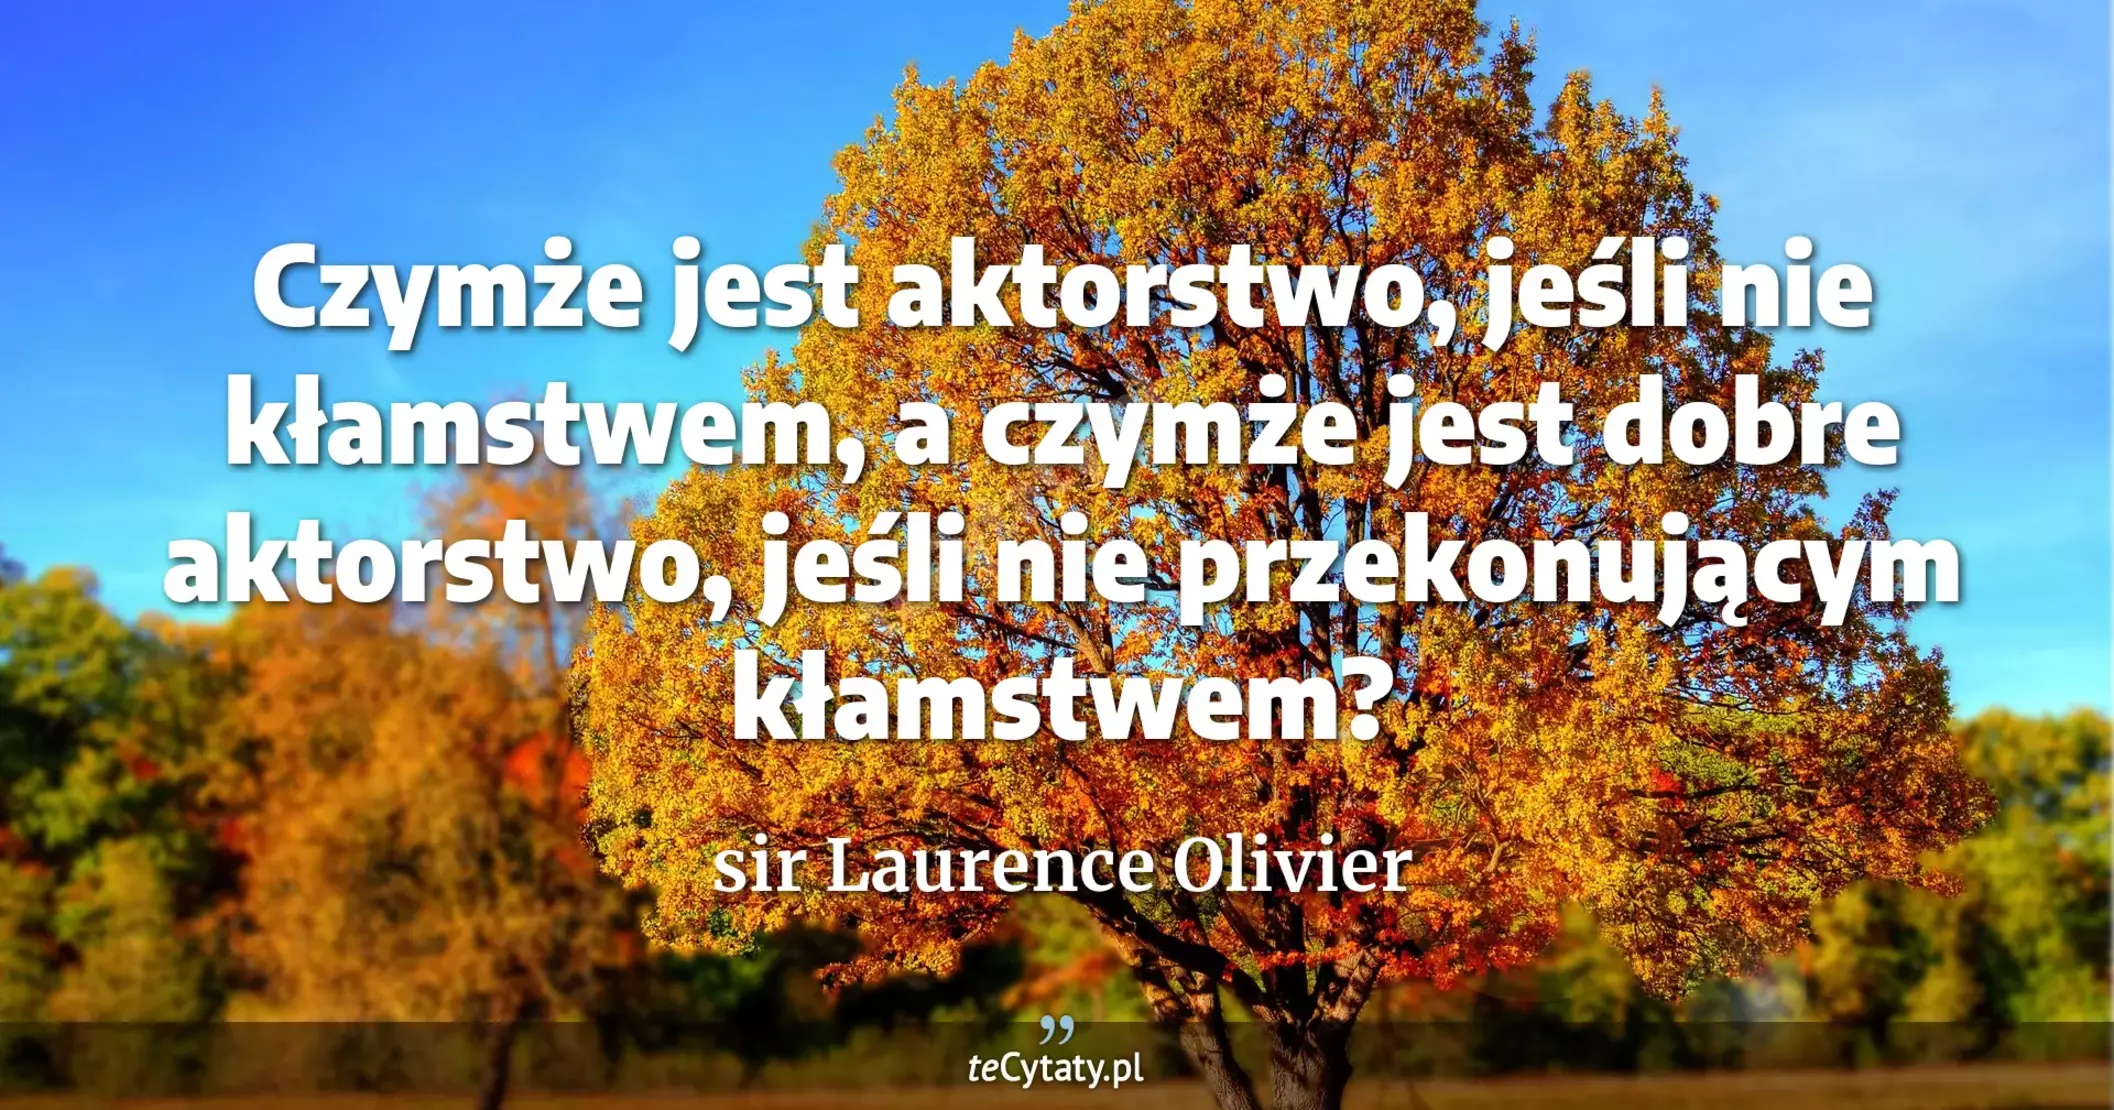 Czymże jest aktorstwo, jeśli nie kłamstwem, a czymże jest dobre aktorstwo, jeśli nie przekonującym kłamstwem? - sir Laurence Olivier